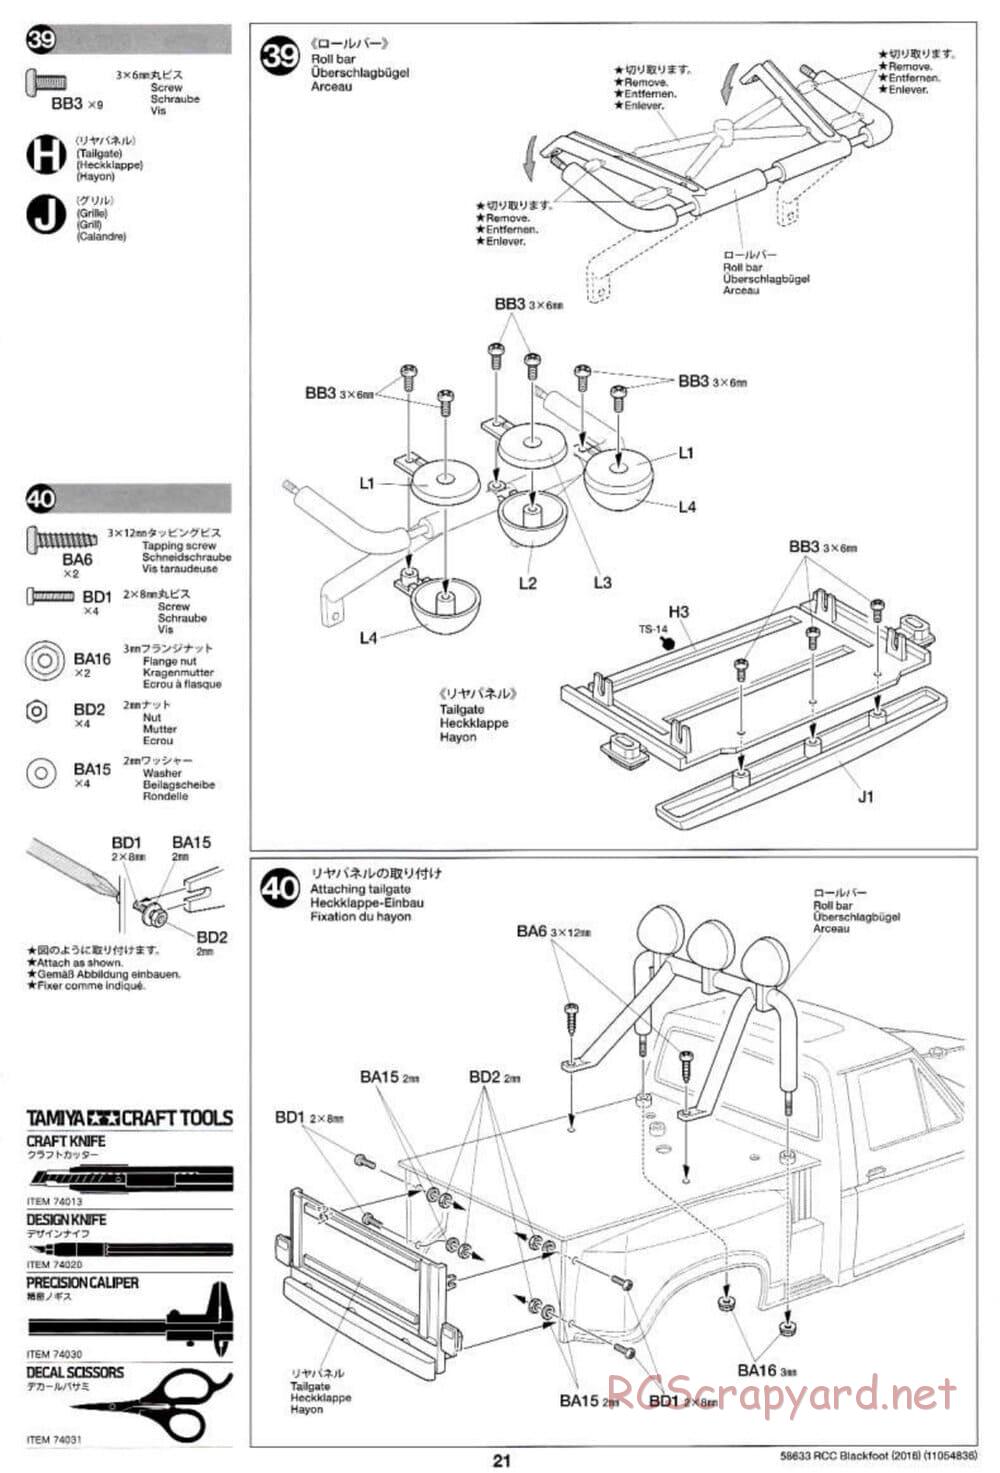 Tamiya - Blackfoot 2016 - ORV Chassis - Manual - Page 21